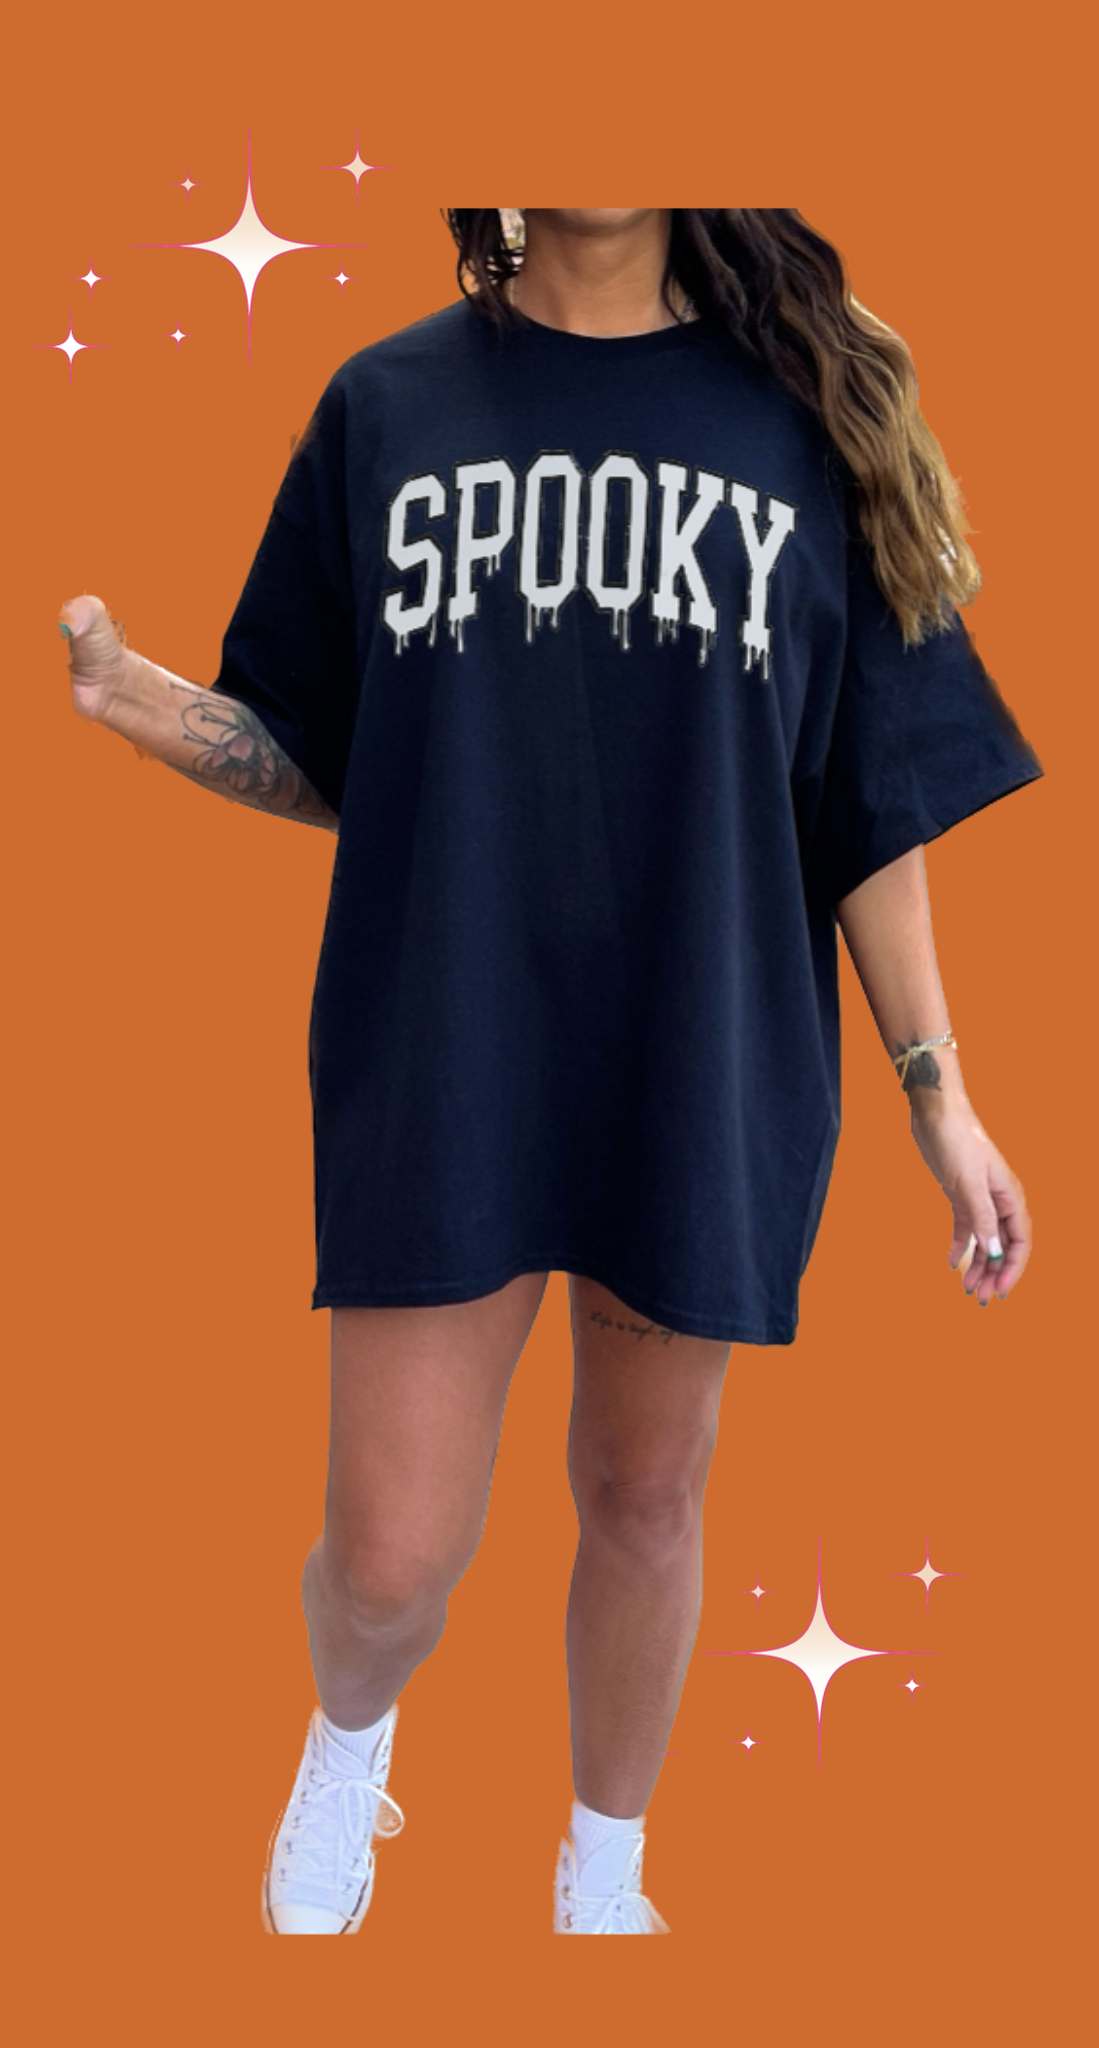 Spooky tshirt